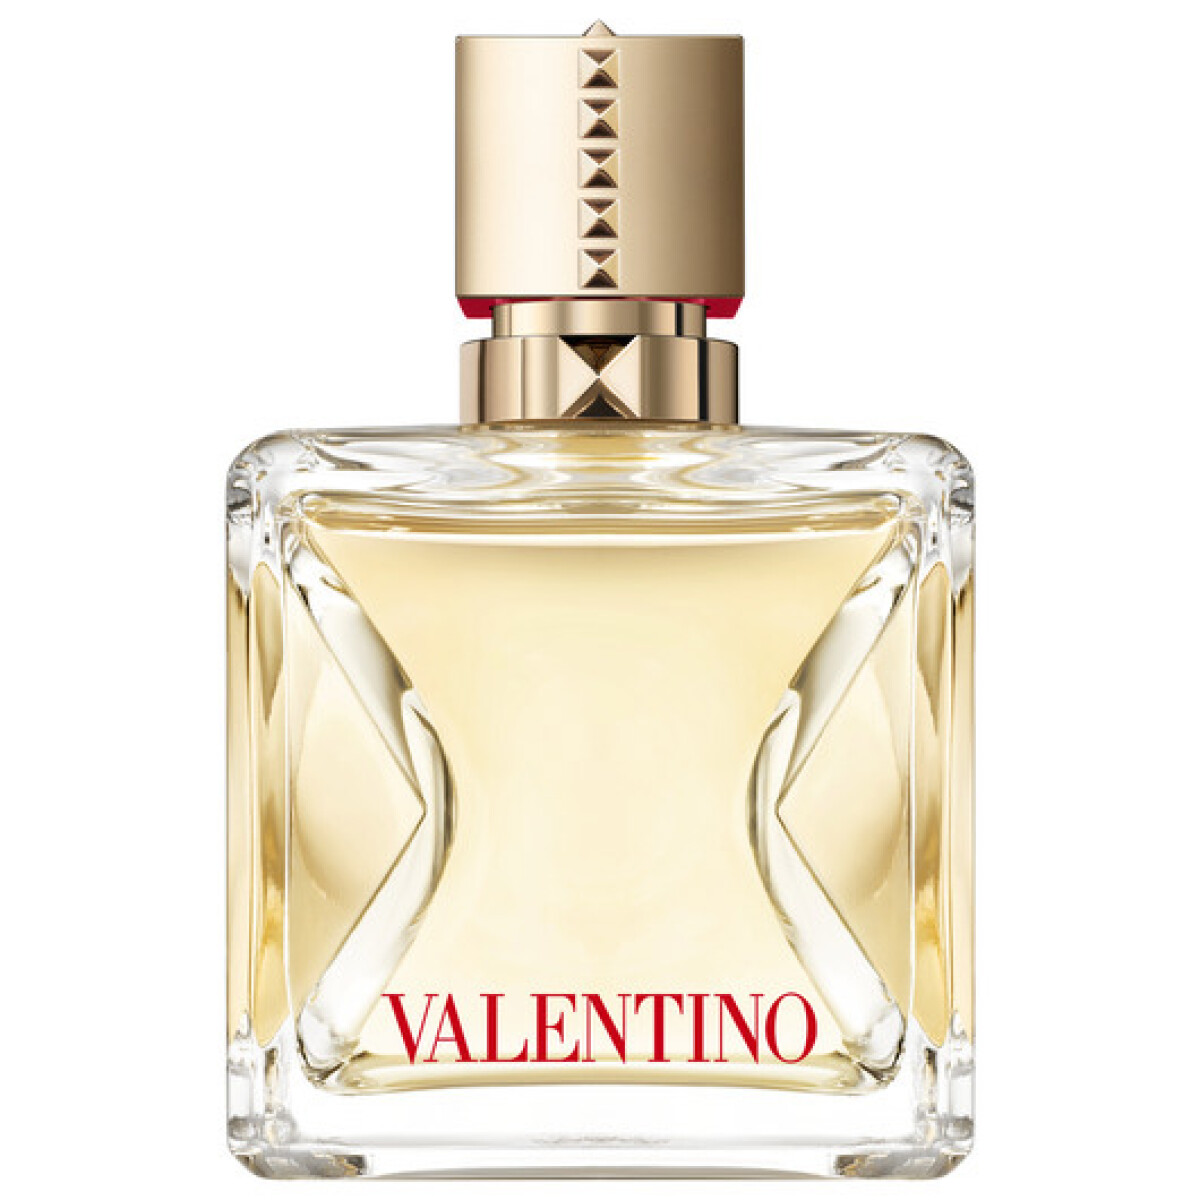 Perfume Valentino Voce Viva Edp 100ml 